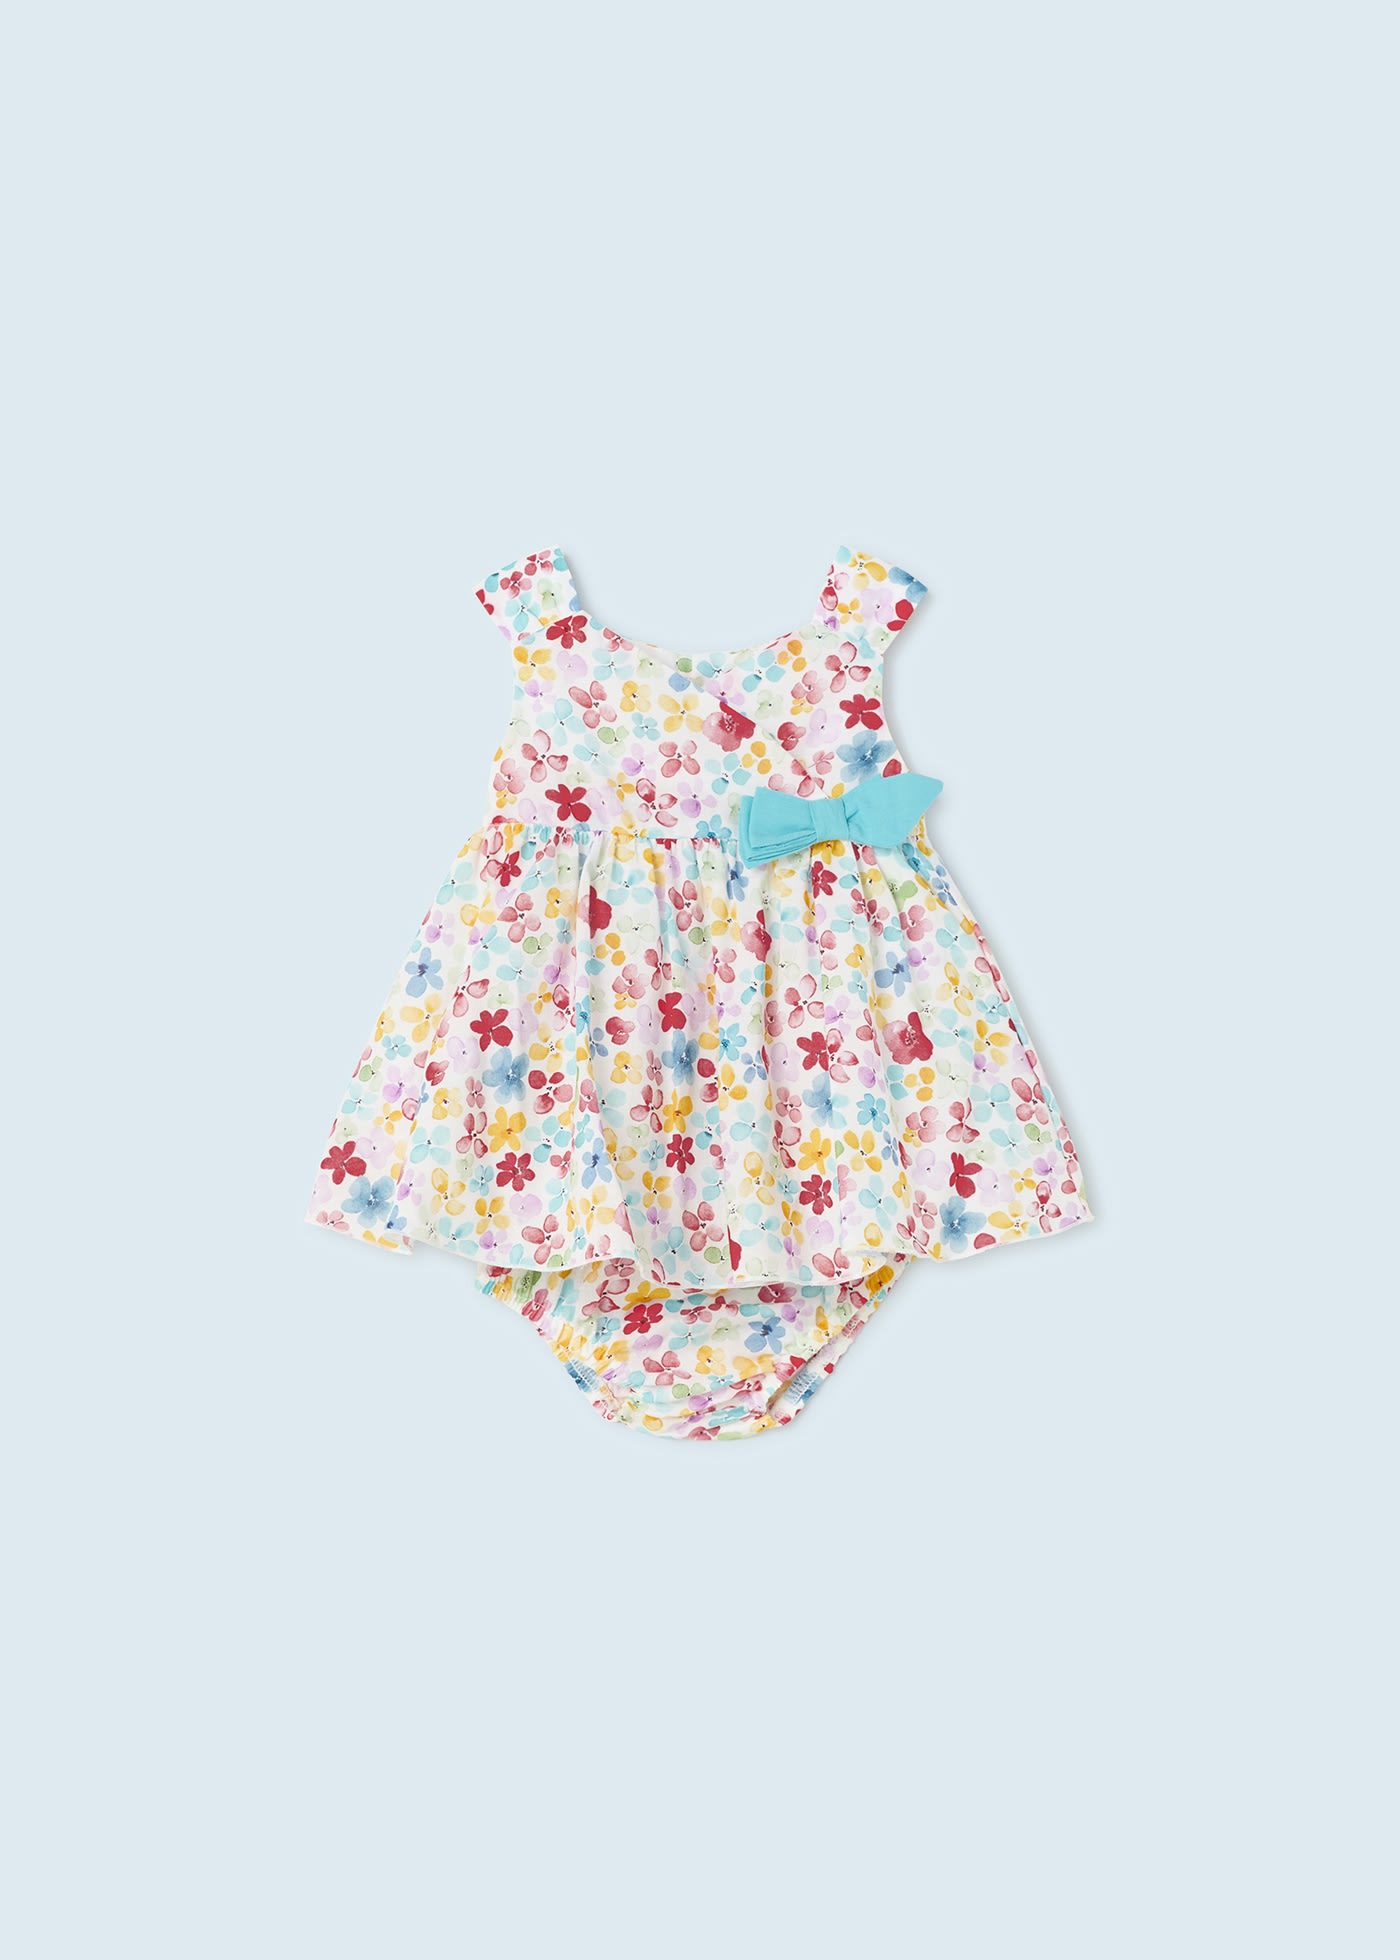 (image for) Vestito stampato con copri pannolino neonata mayoral Art. 23-01824-022